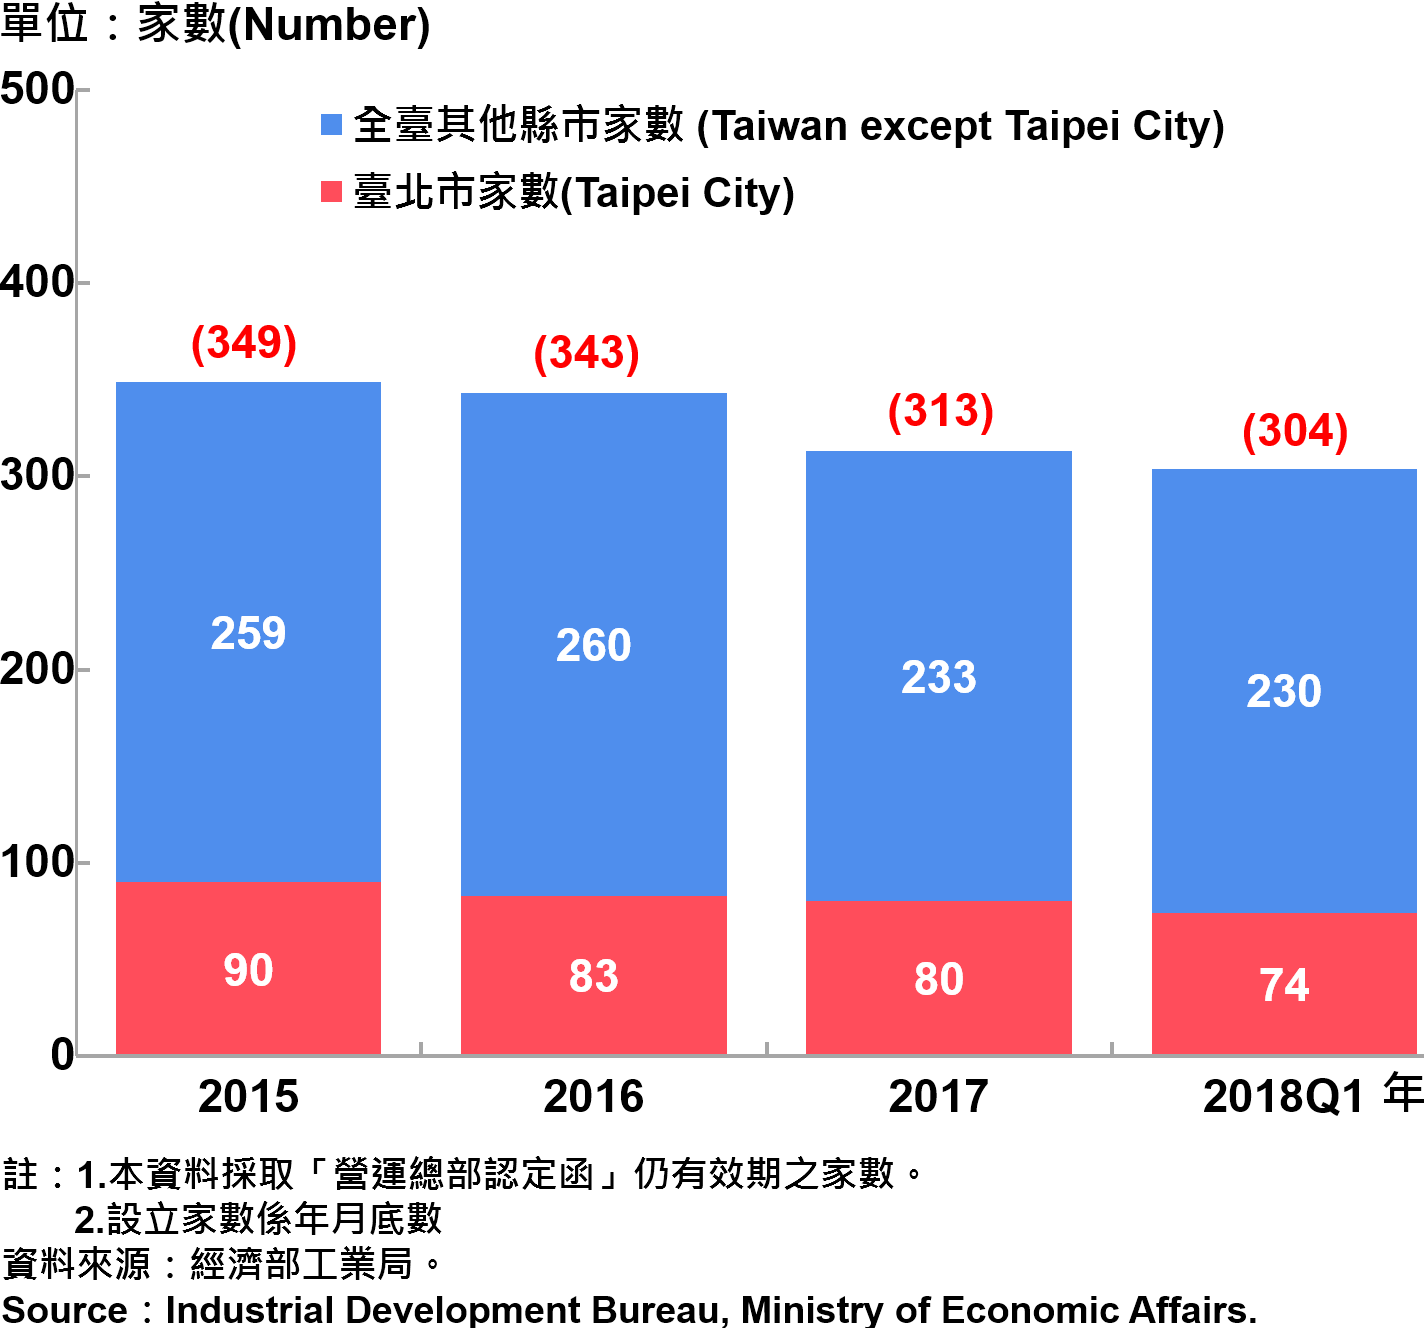 臺北市企業營運總部之設立家數—2018Q1 Number of Established Enterprise Business Headquarters in Taipei City—2018Q1